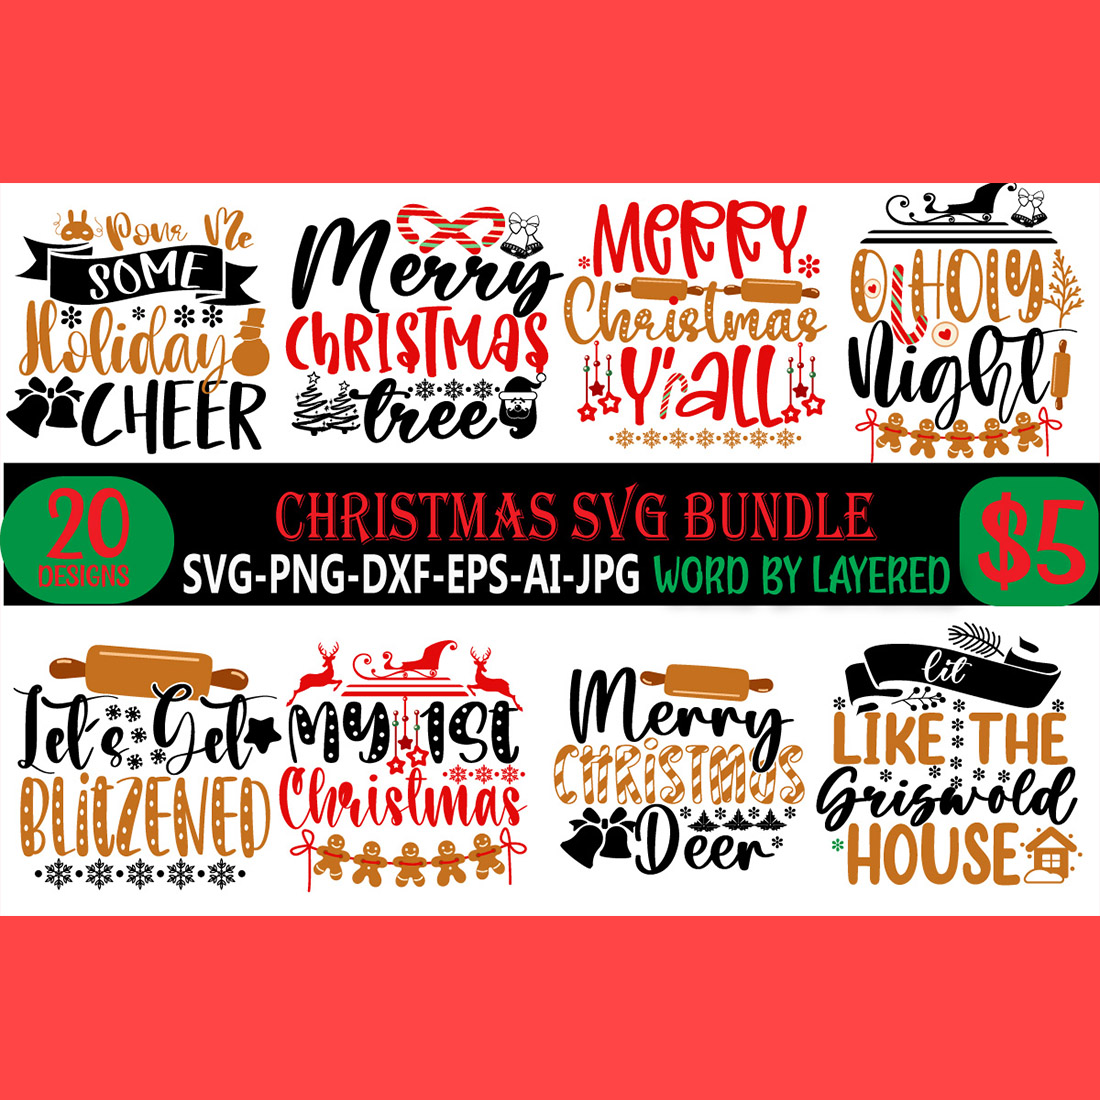 Christmas SVG Bundle cover image.